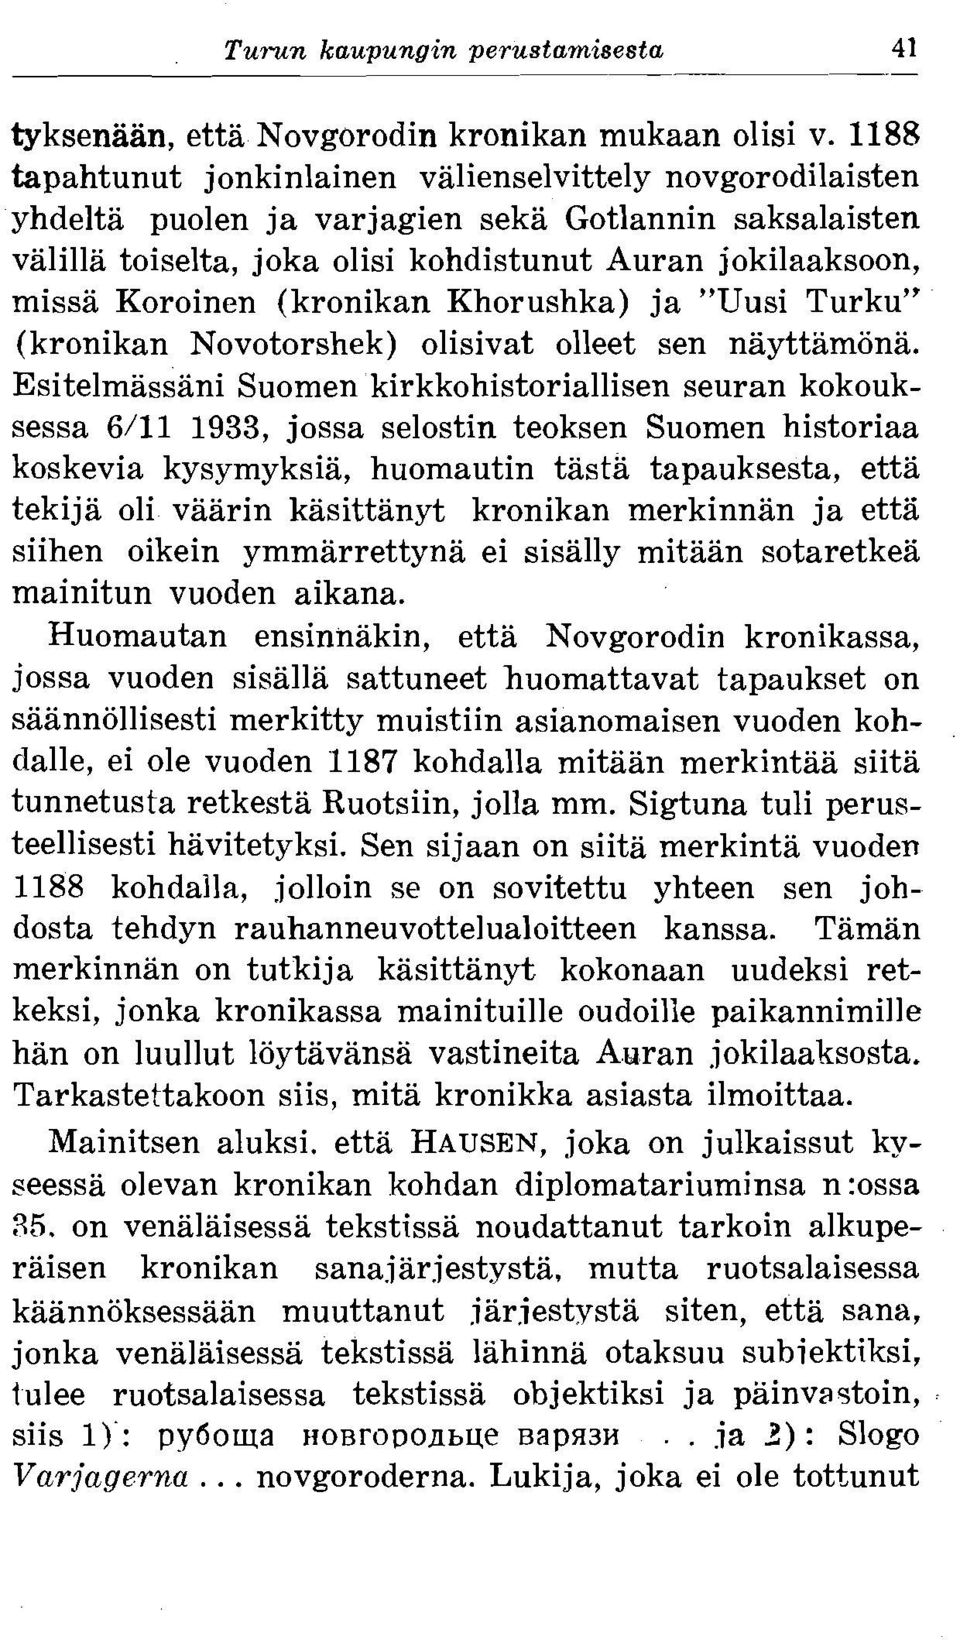 (kronikan Khorushka) ja "Uusi Turku" (kronikan Novotorshek) olisivat olleet sen nayttamona.